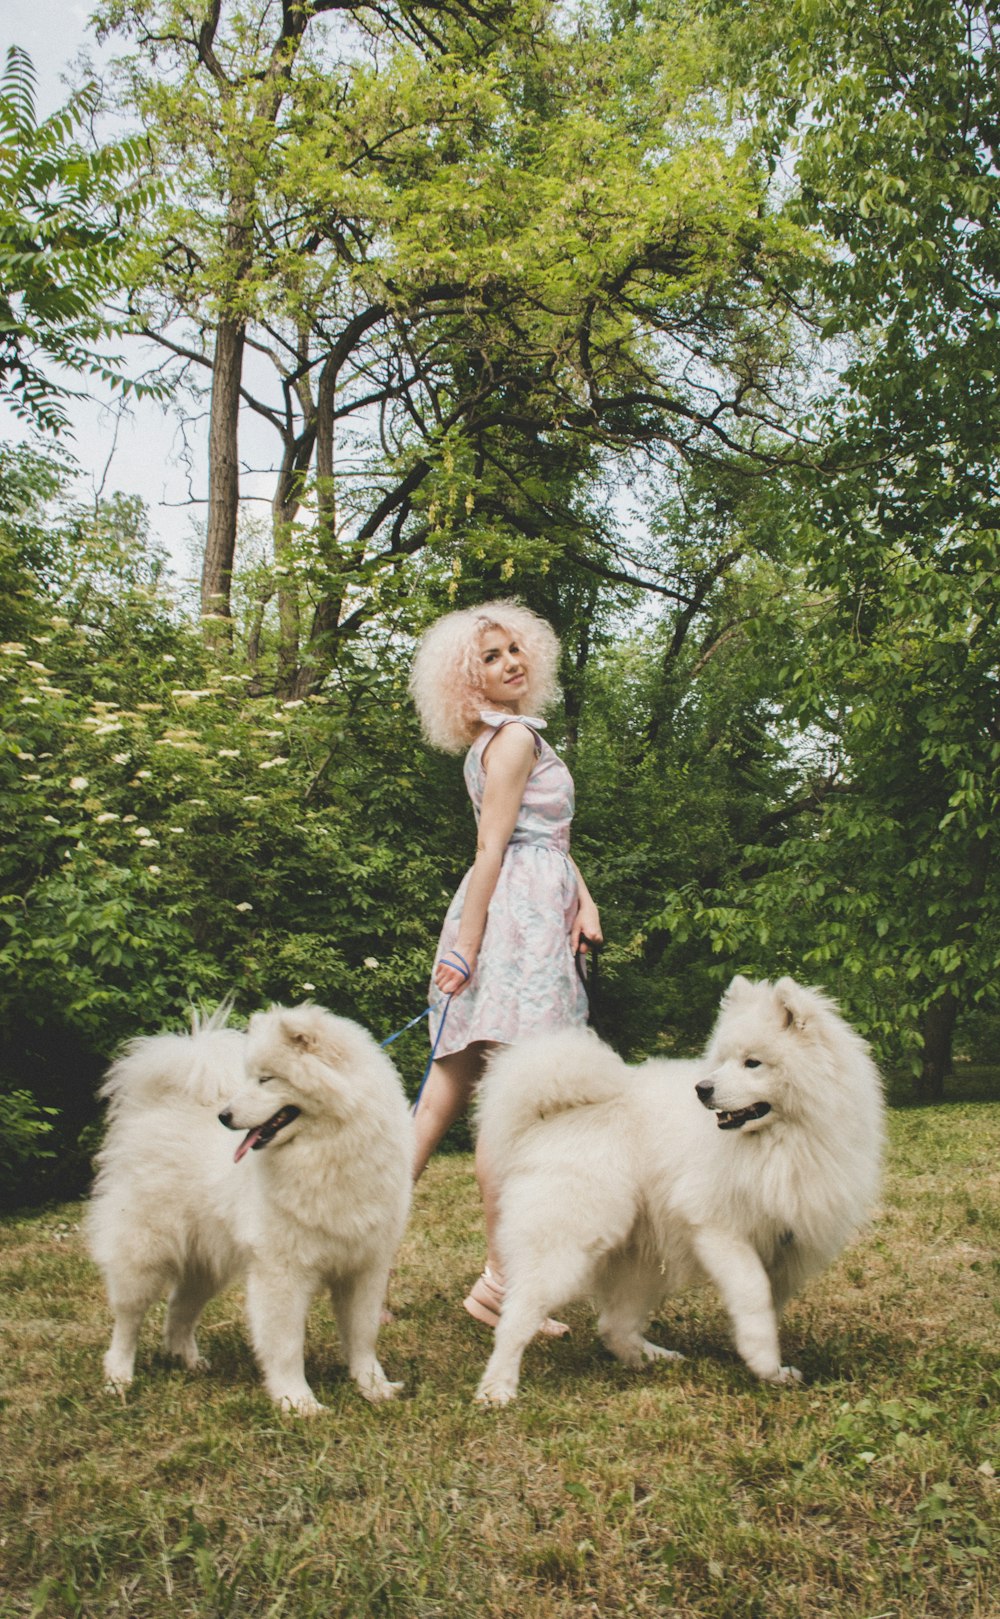 Eine Frau, die neben drei weißen Hunden steht